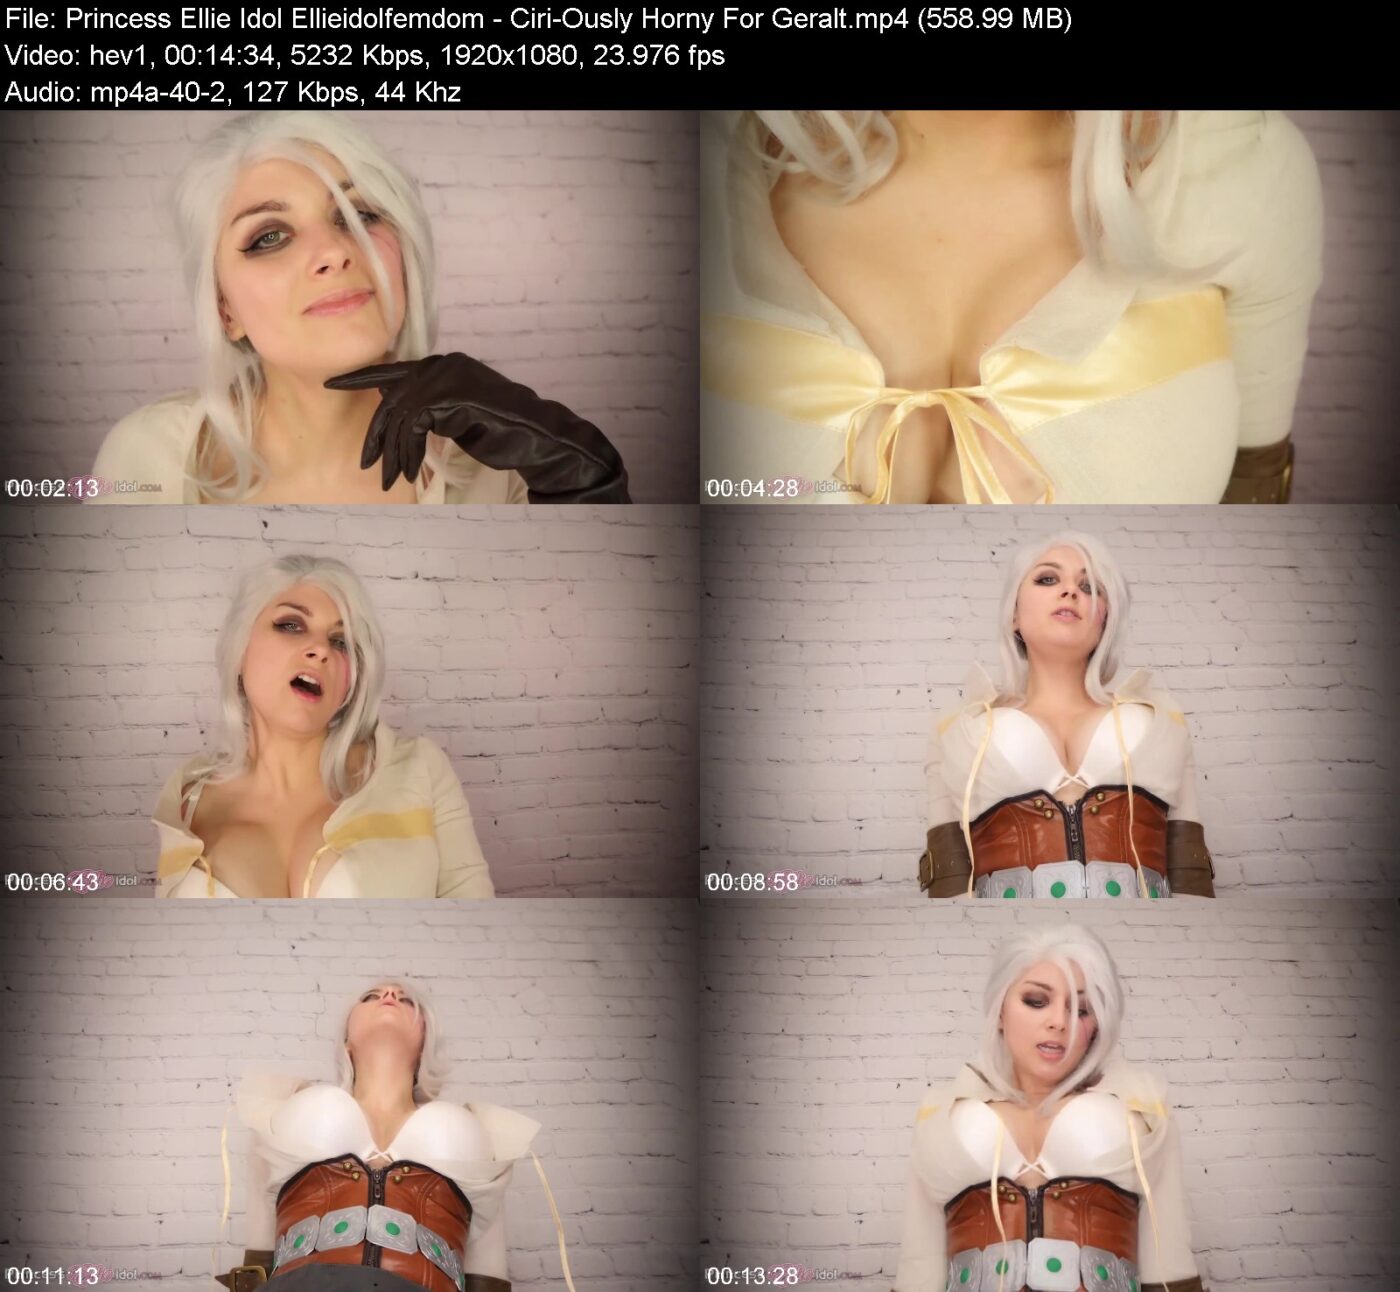 Princess Ellie Idol Ellieidolfemdom in Ciri-Ously Horny For Geralt